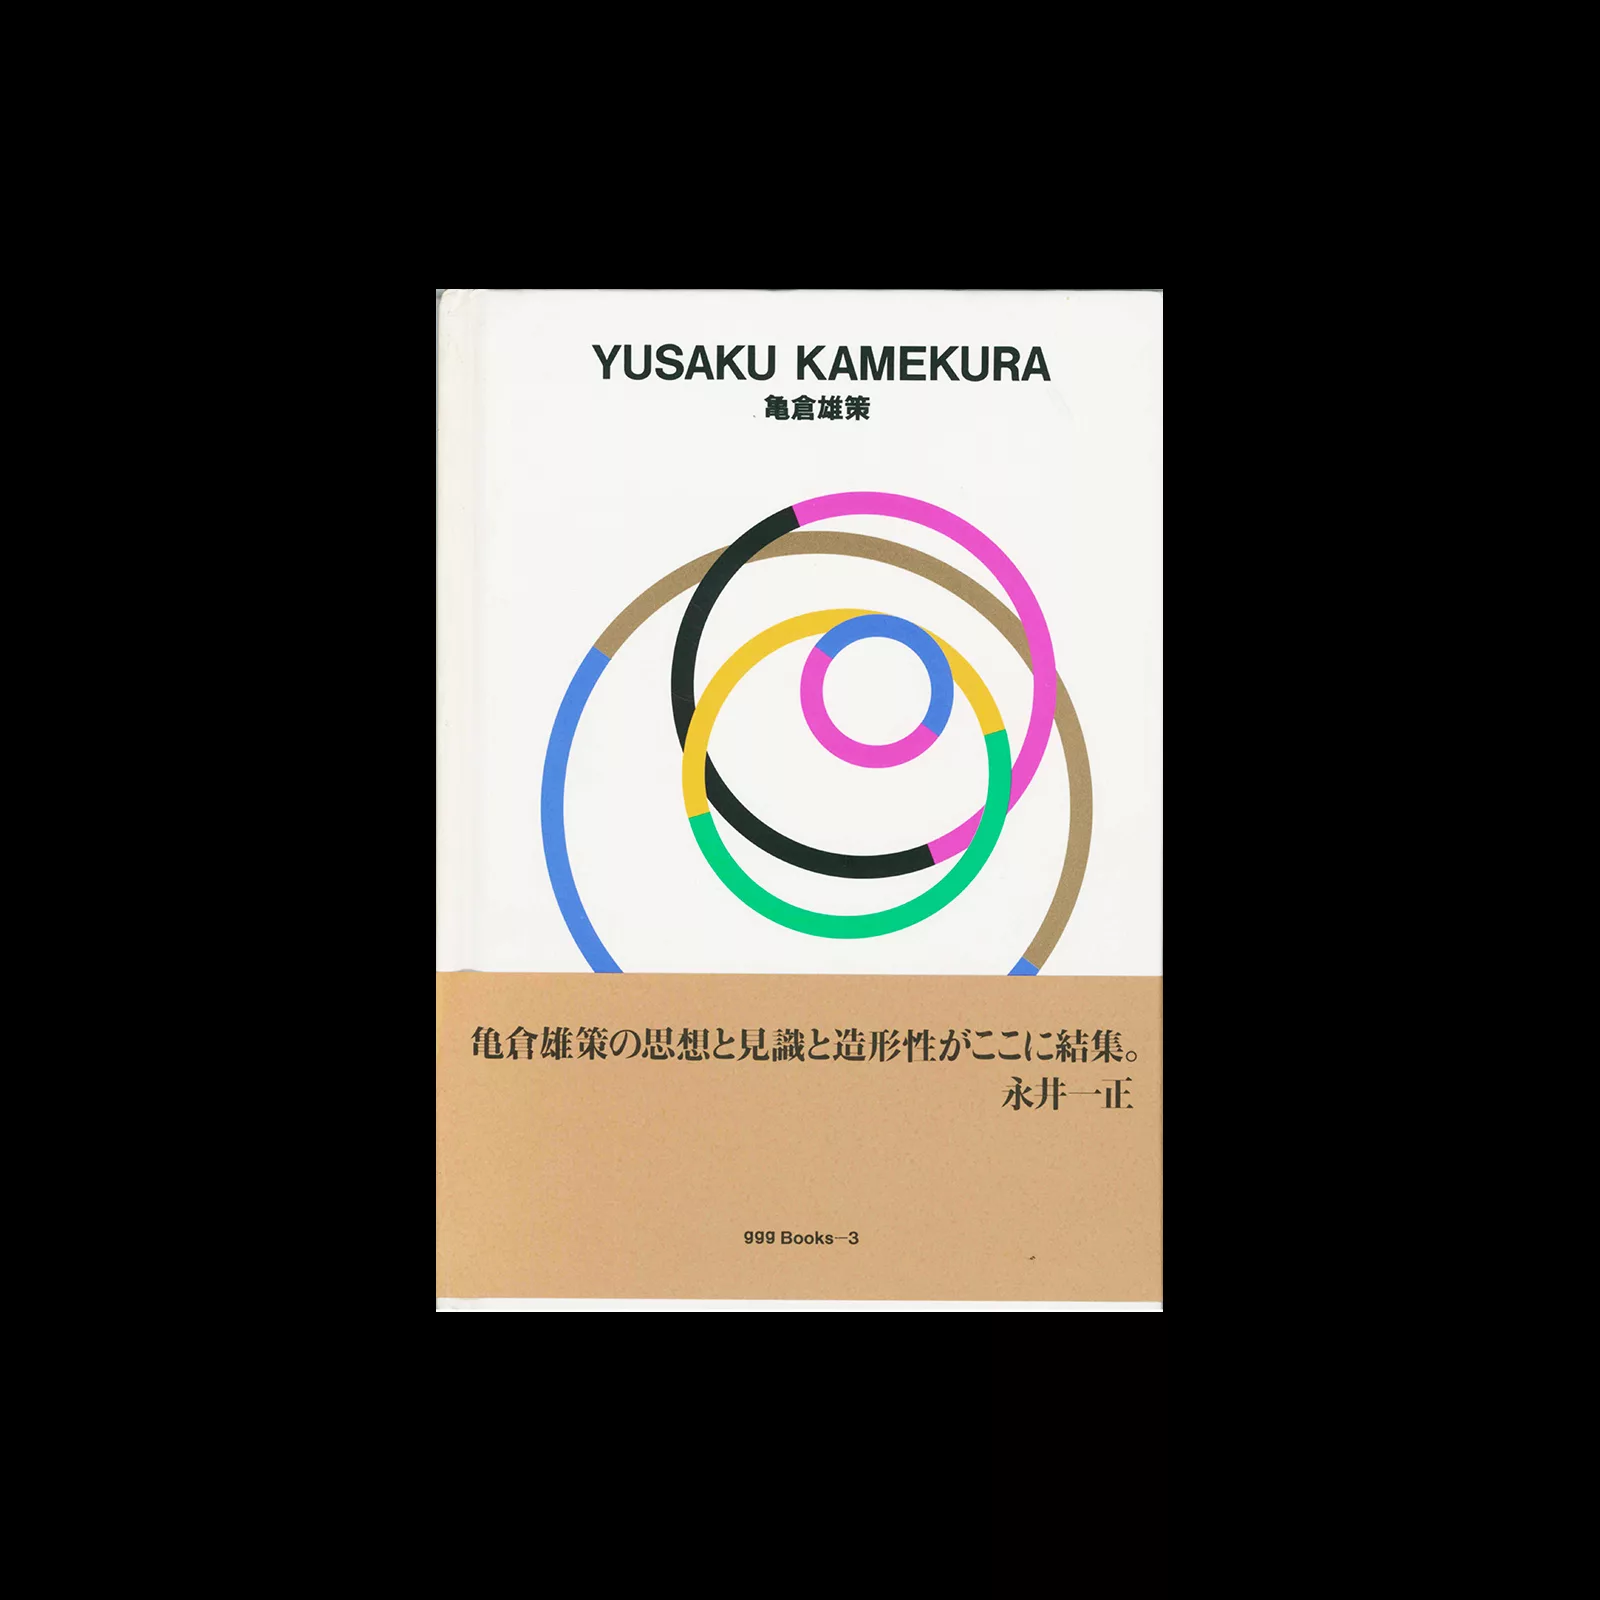 Ginza Graphic Gallery 03, Yusaku Kamekura